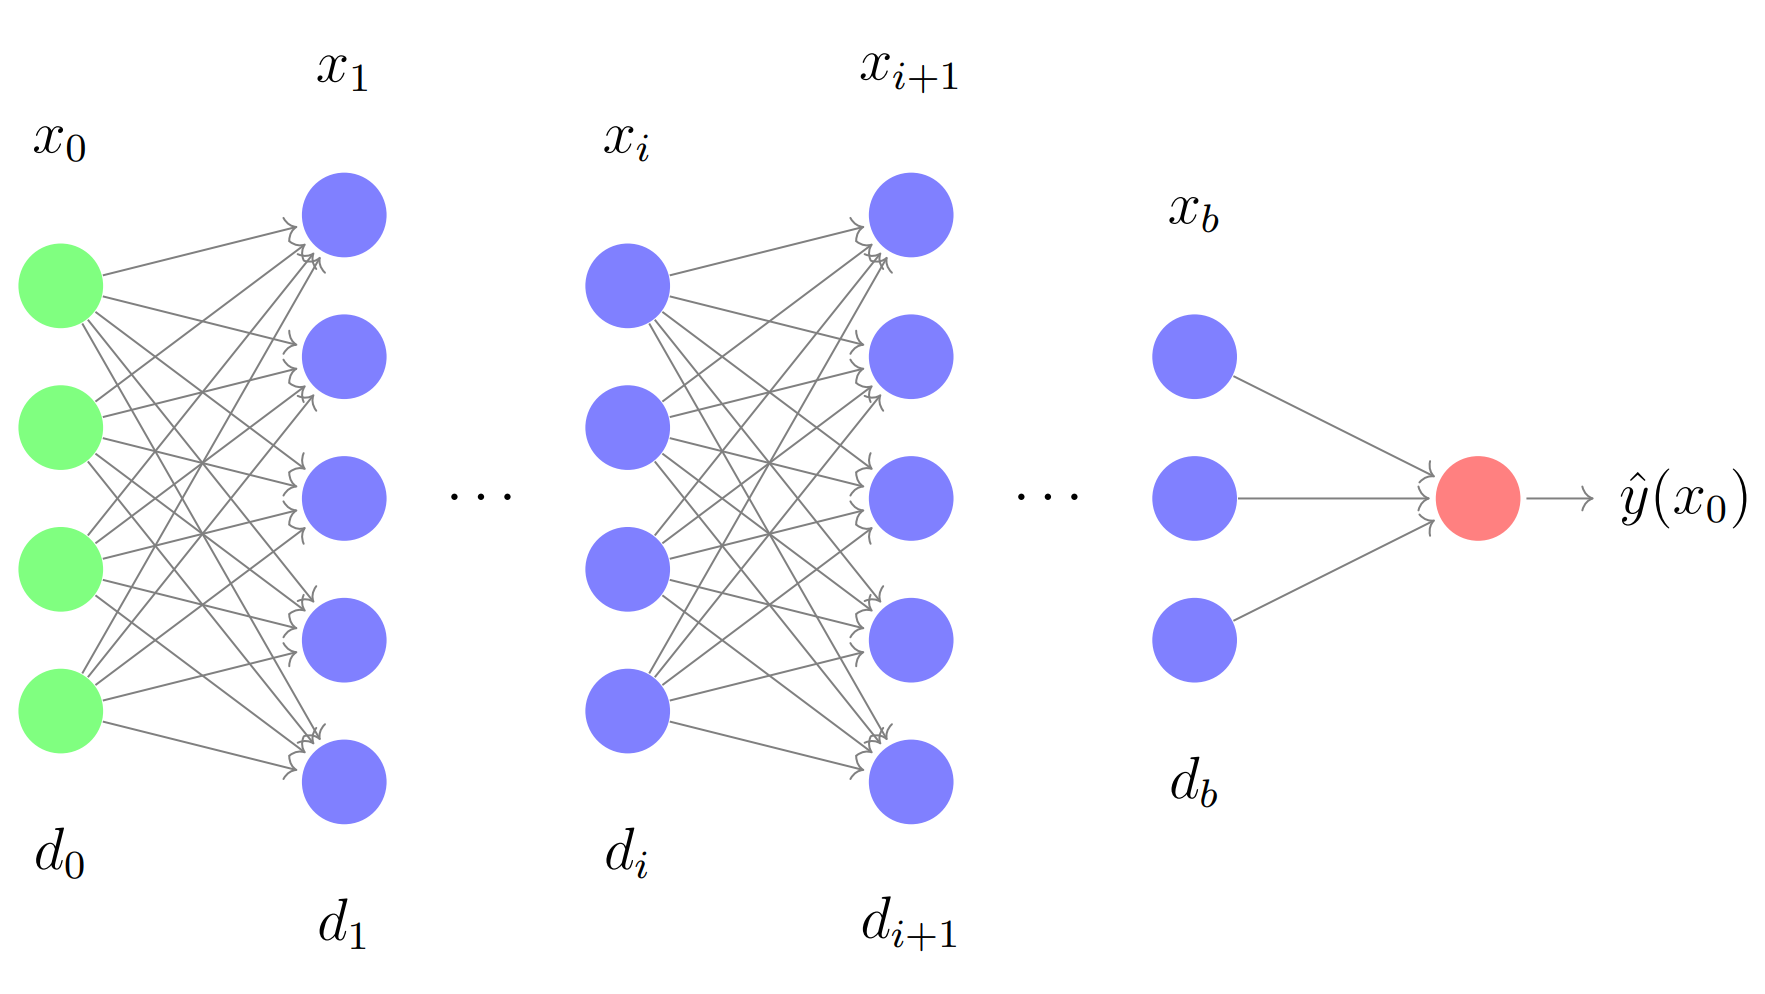 A DNN as a computational graph